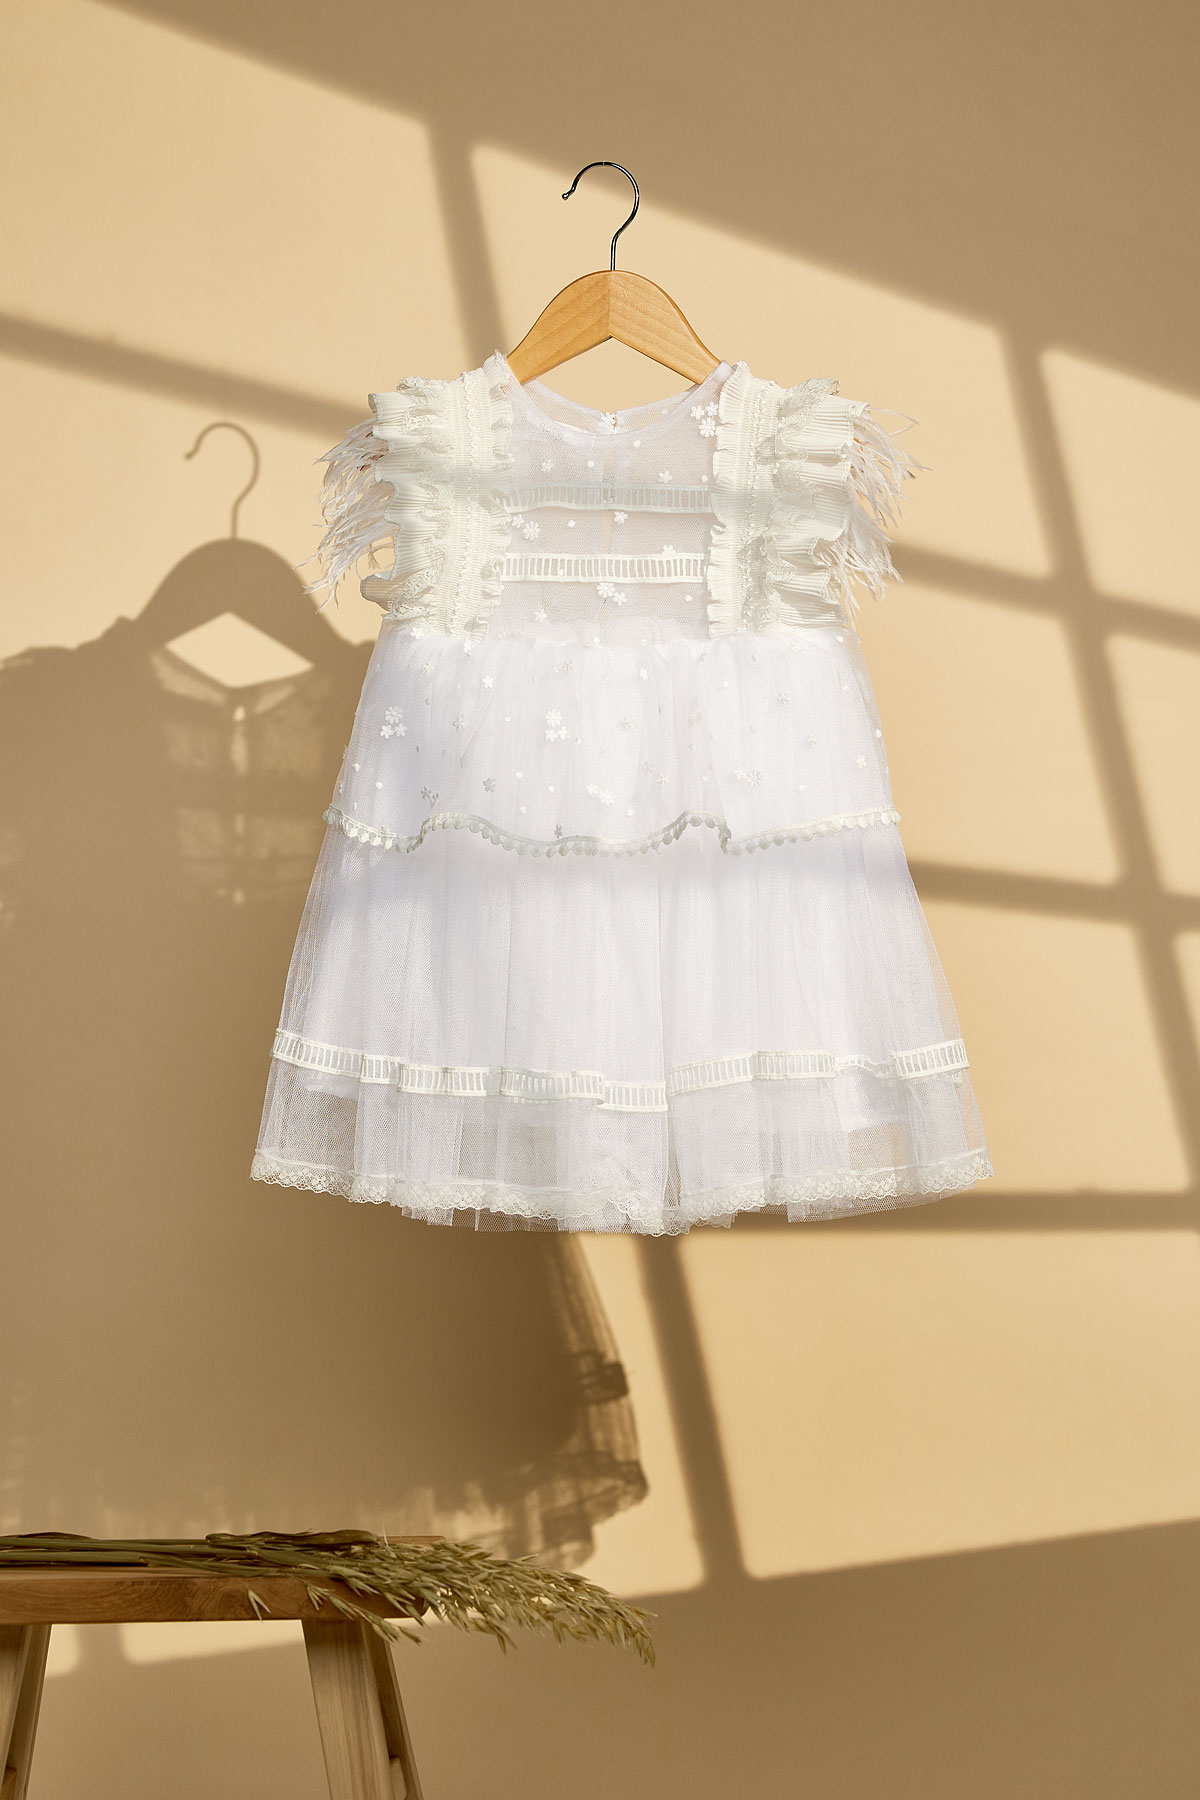 Λευκό βαπτιστικό φόρεμα με δαντέλα μαργαρίτες και φτερά